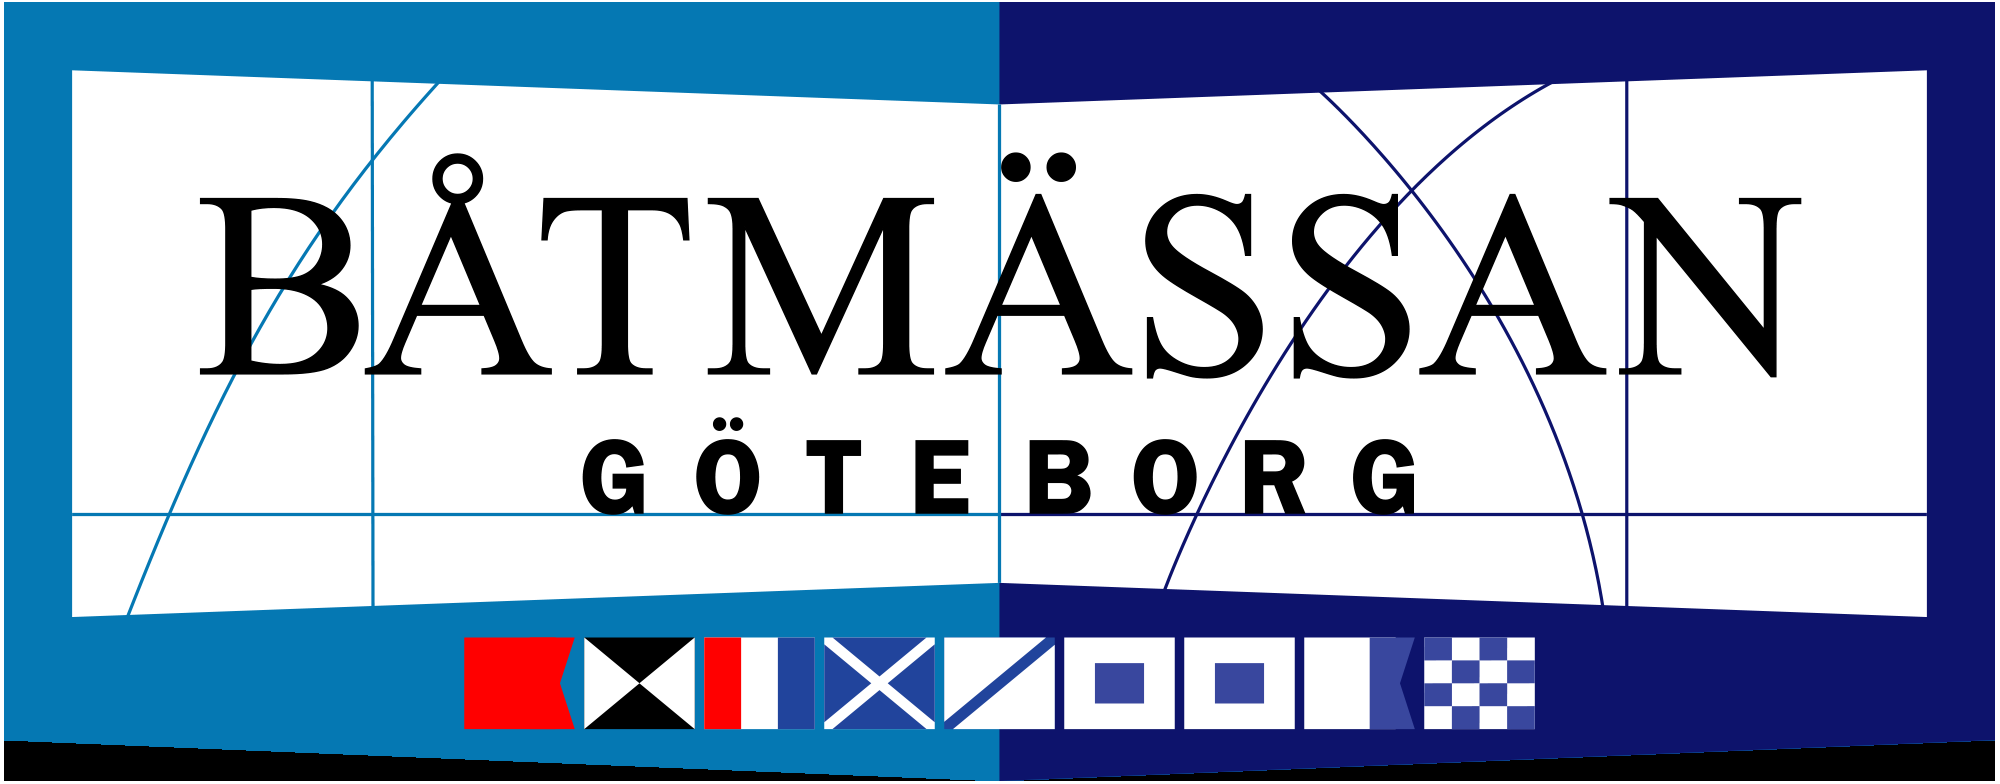 Båtmässan Göteborg 2020